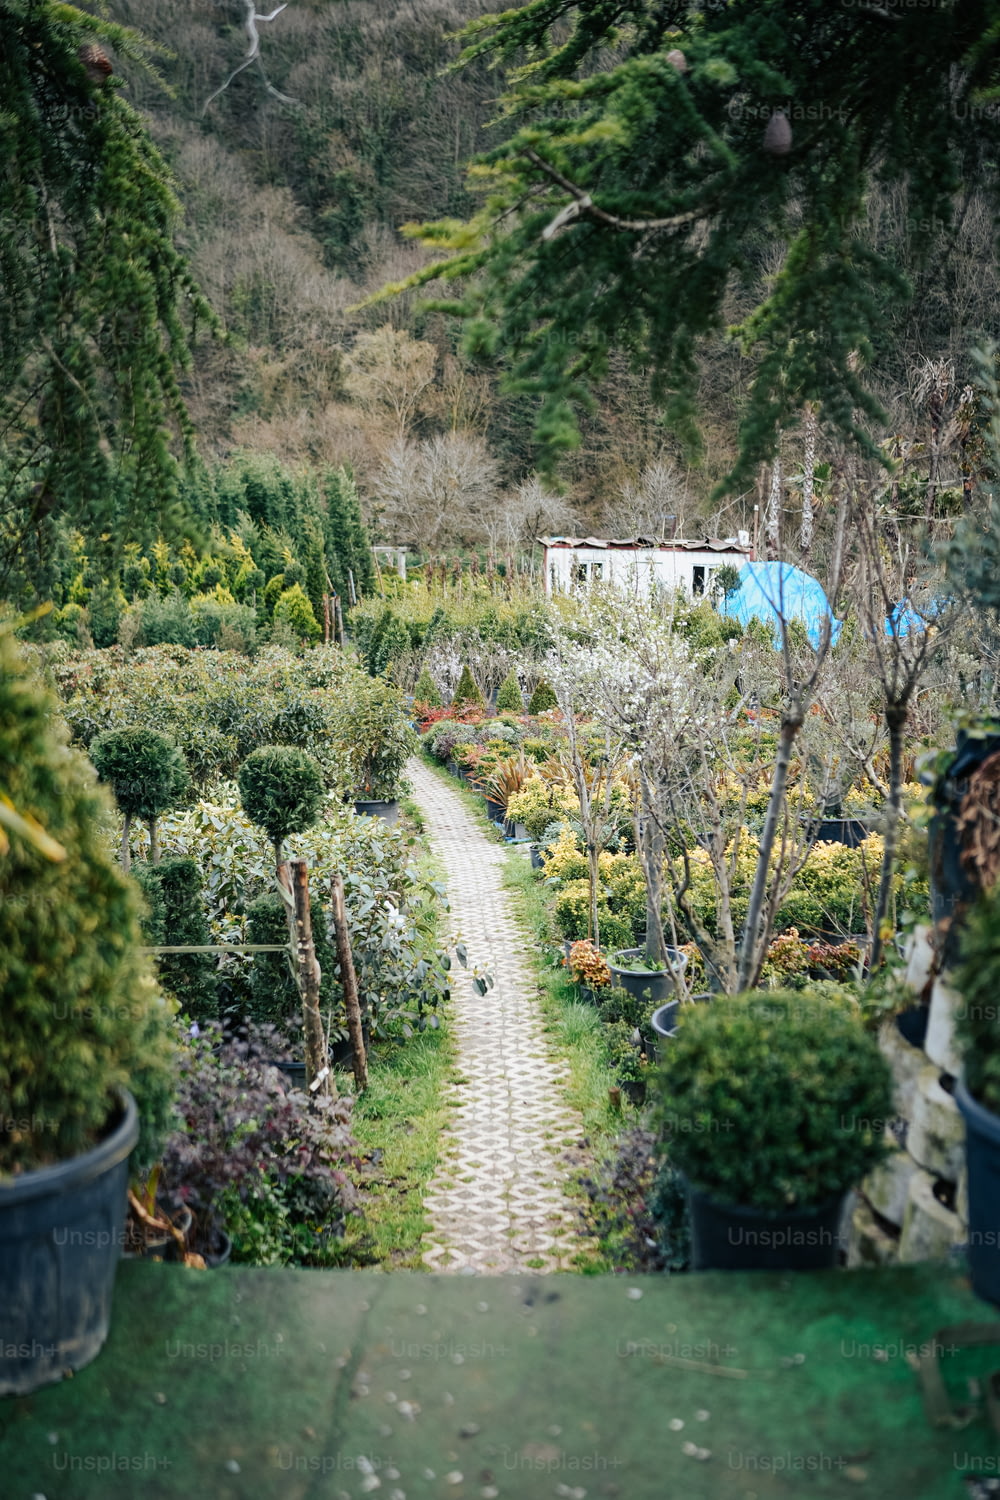 Un camino a través de un jardín lleno de muchas plantas